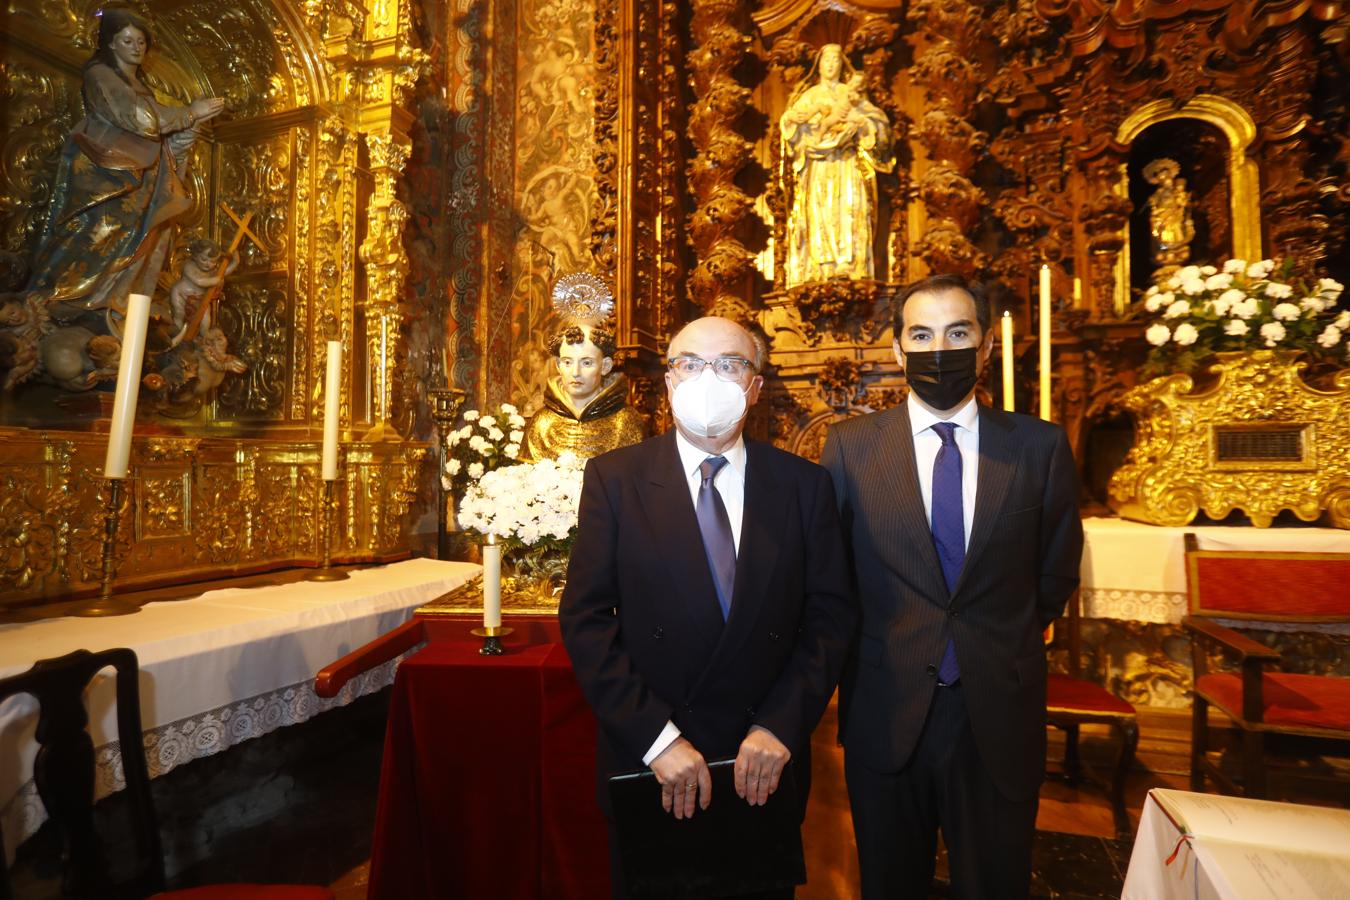 La exaltación a San Álvaro de Córdoba, en imágenes